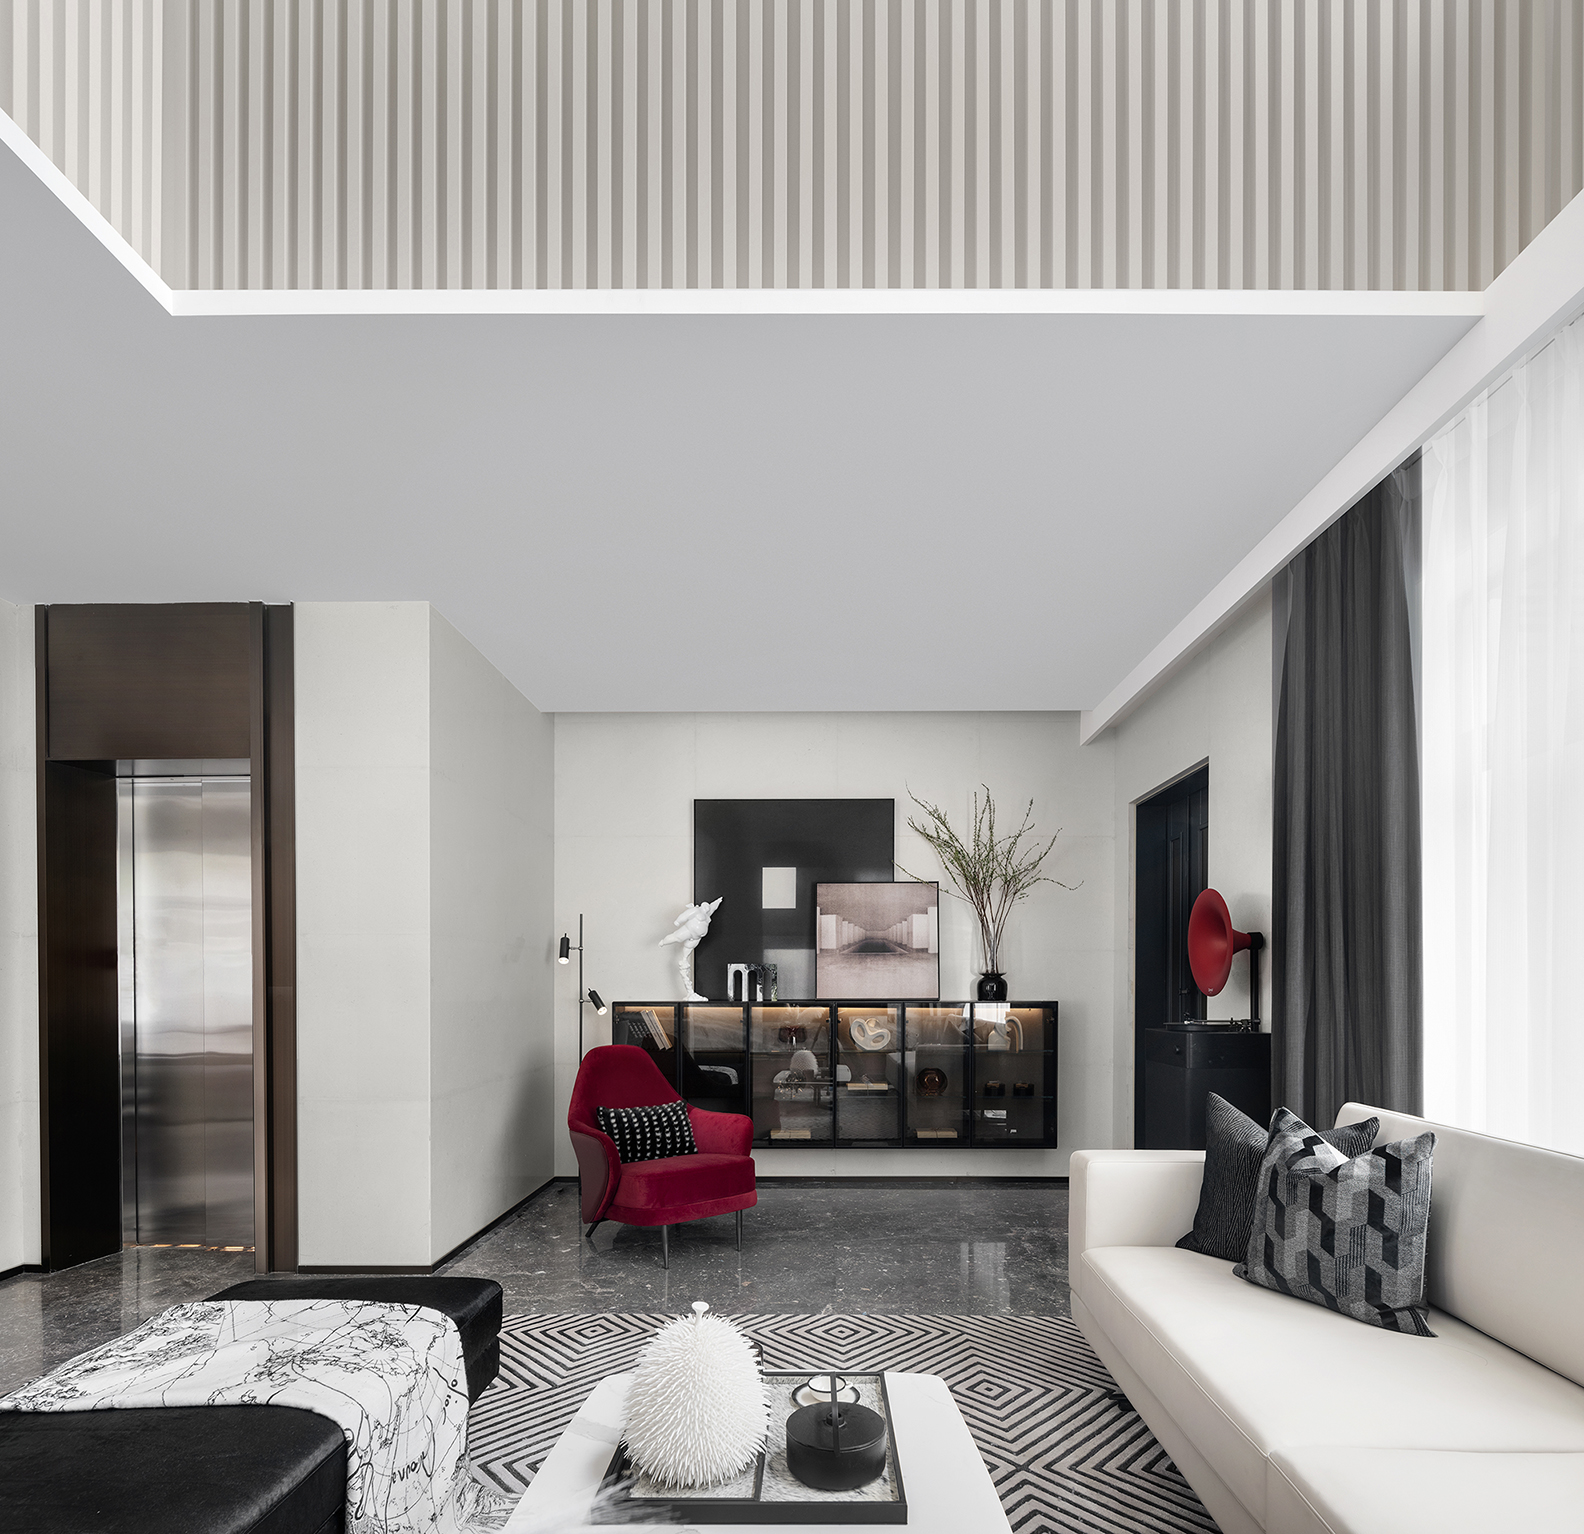 MUSE Design Winners - Jingcai future home villa